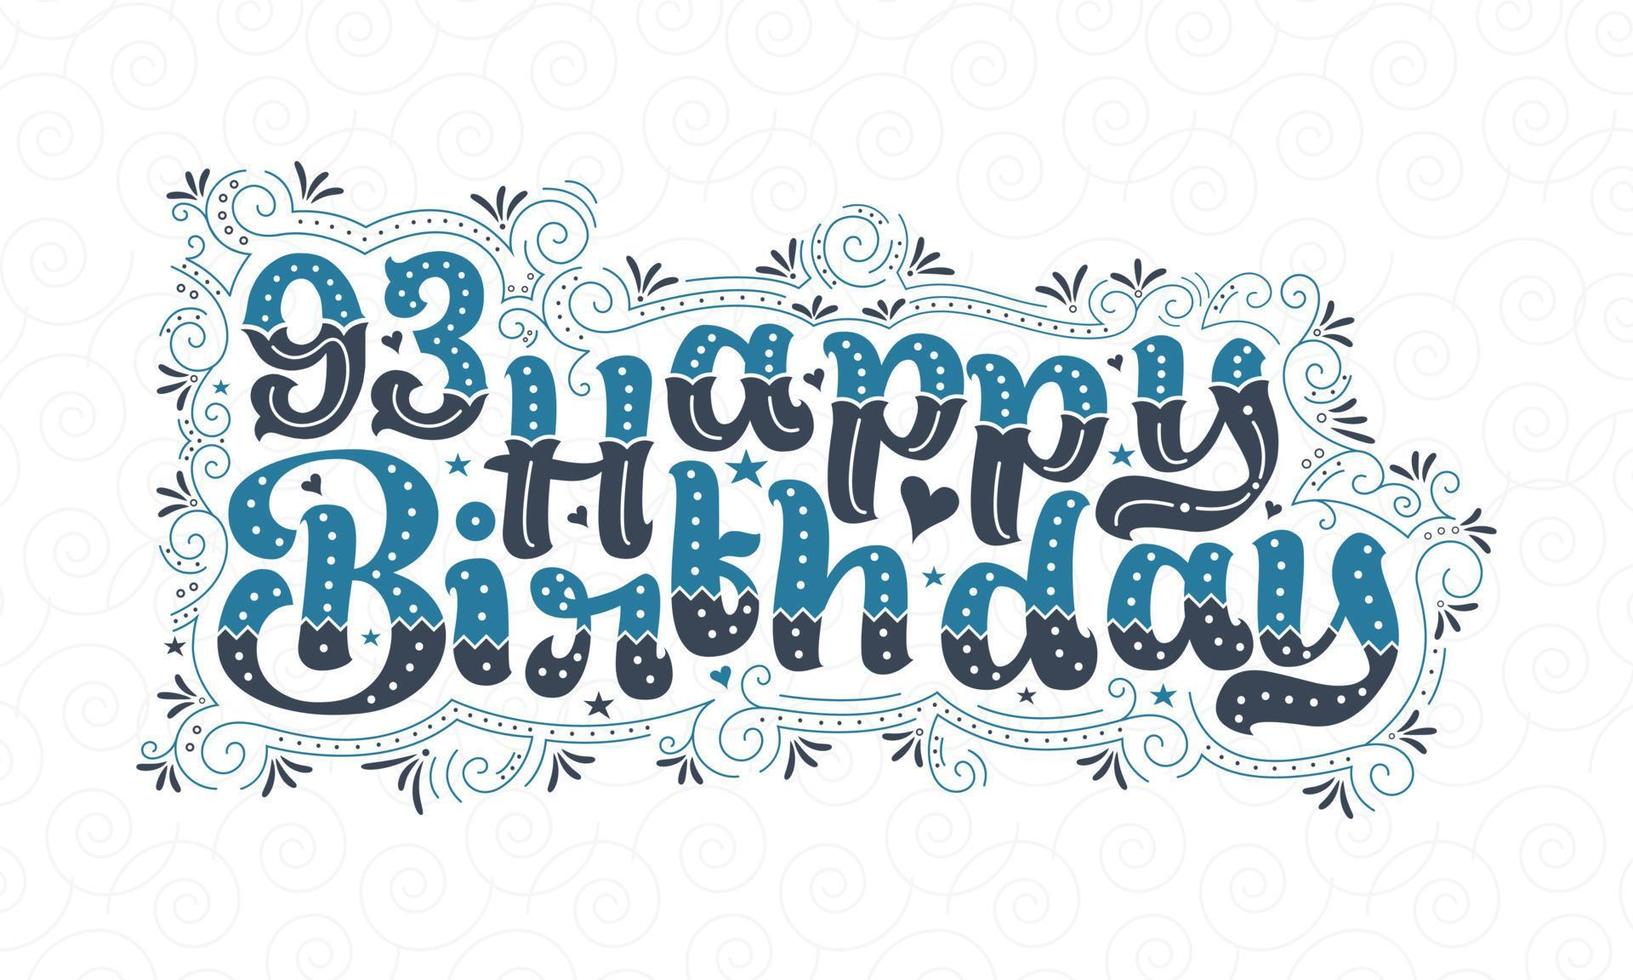 93 letras de feliz cumpleaños, hermoso diseño tipográfico de cumpleaños de 93 años con puntos, líneas y hojas azules y negros. vector